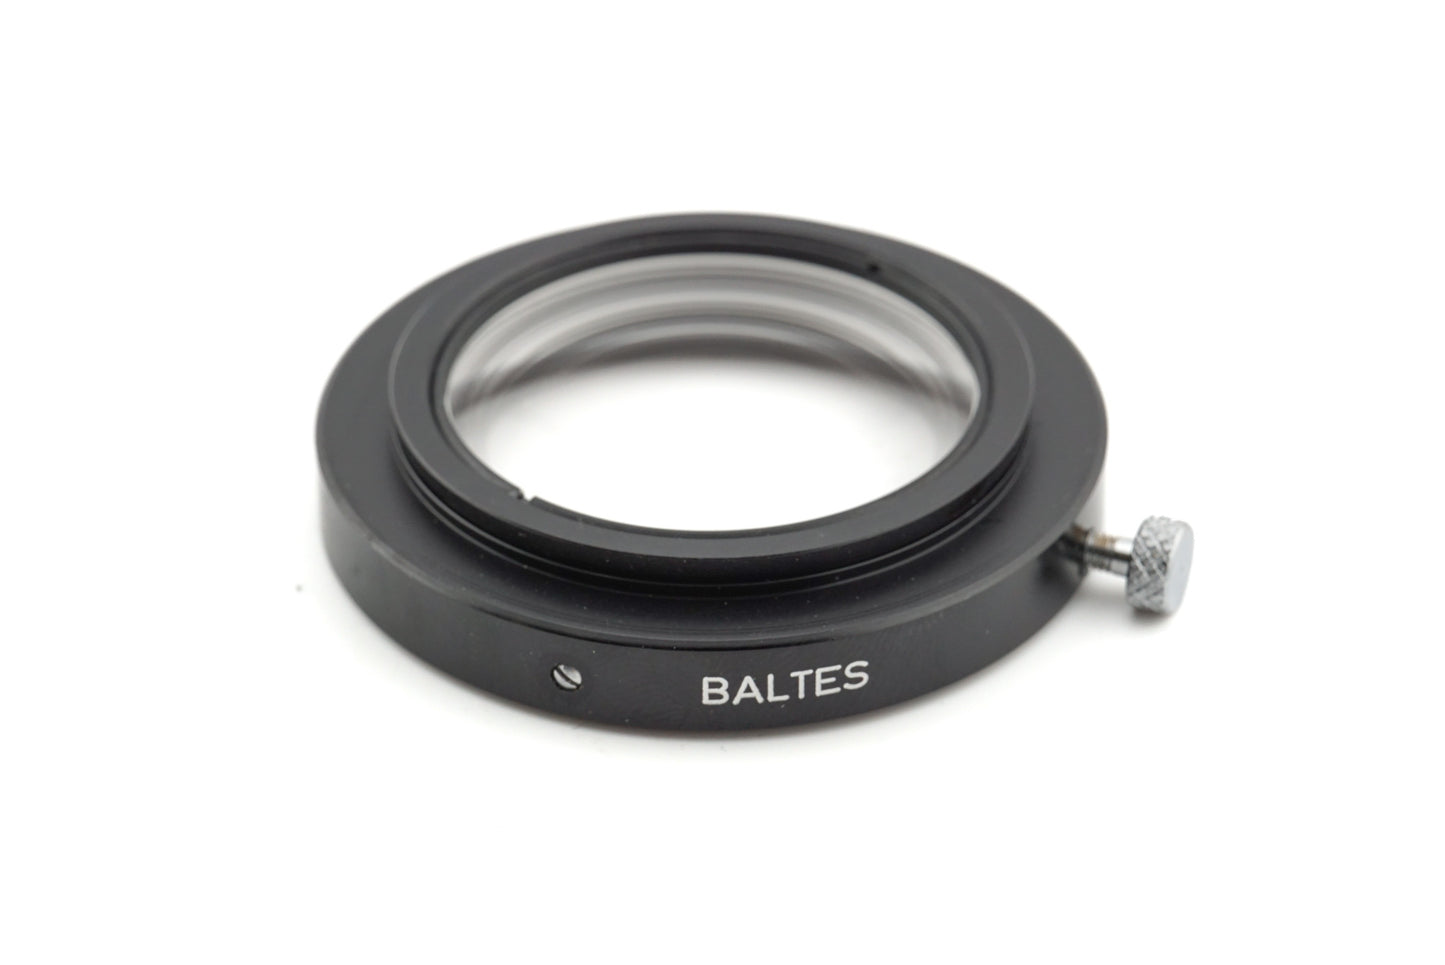 Novoflex Close-Up Lens for 1:1 Slide Copying (BALTES) - Accessory